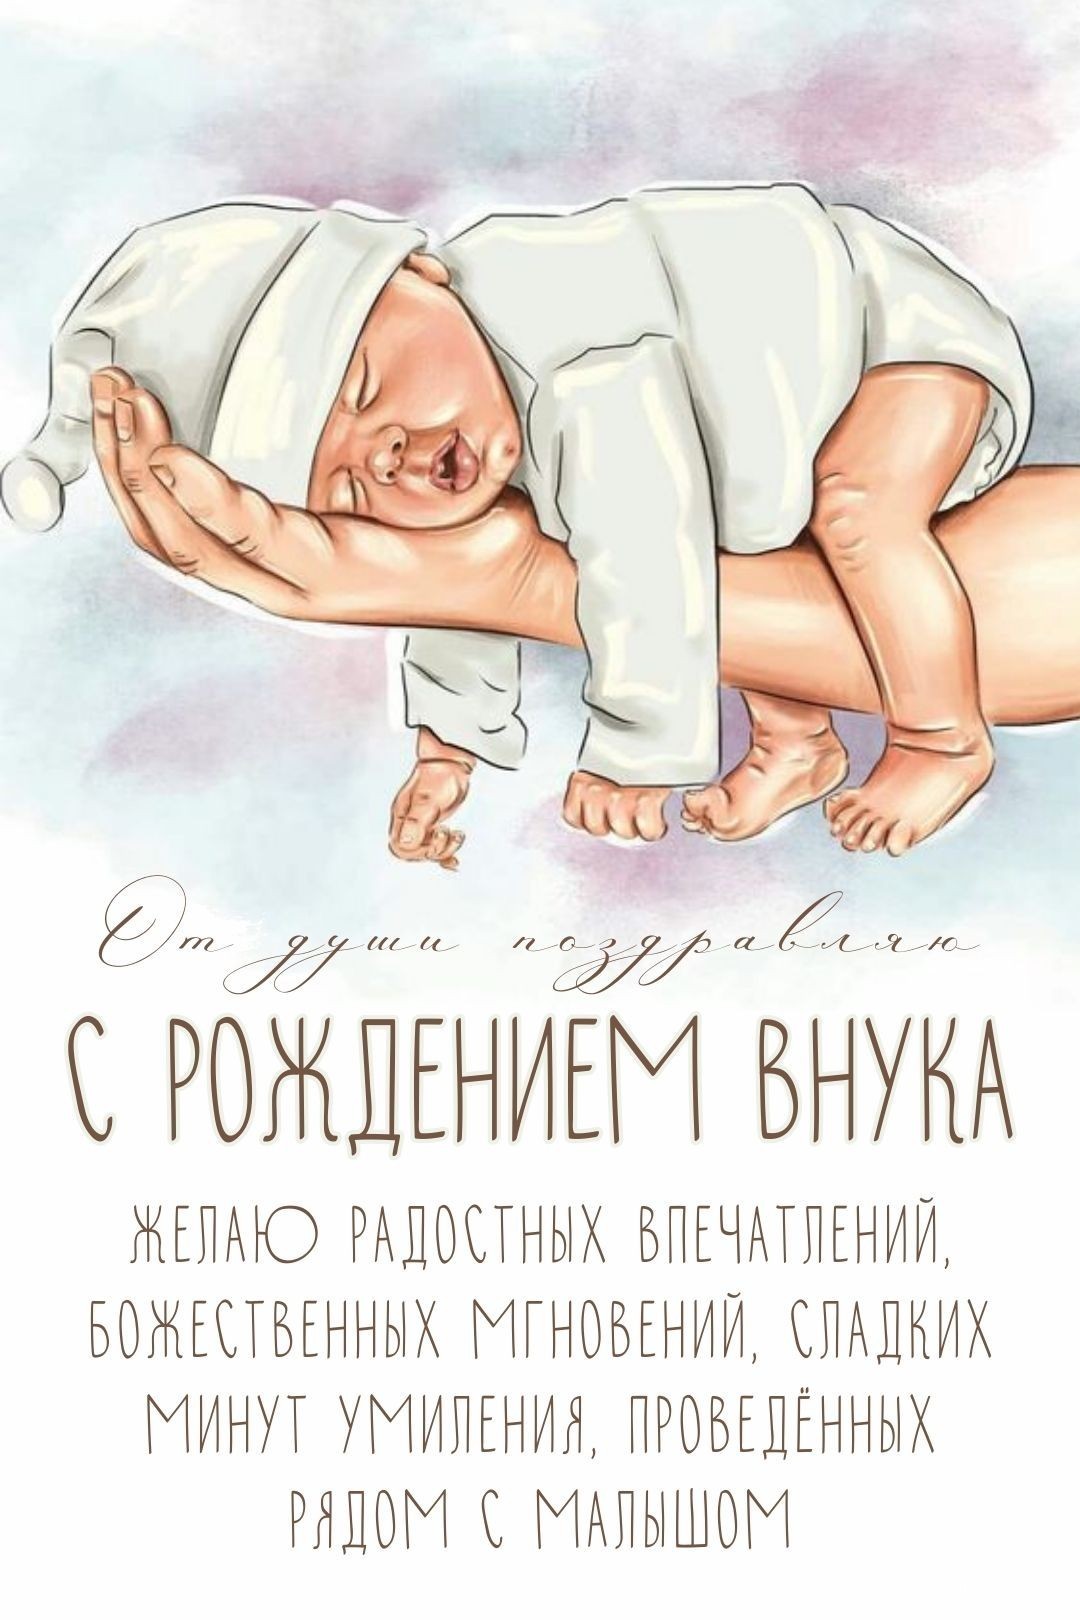 Картинки и открытки с рождением внука